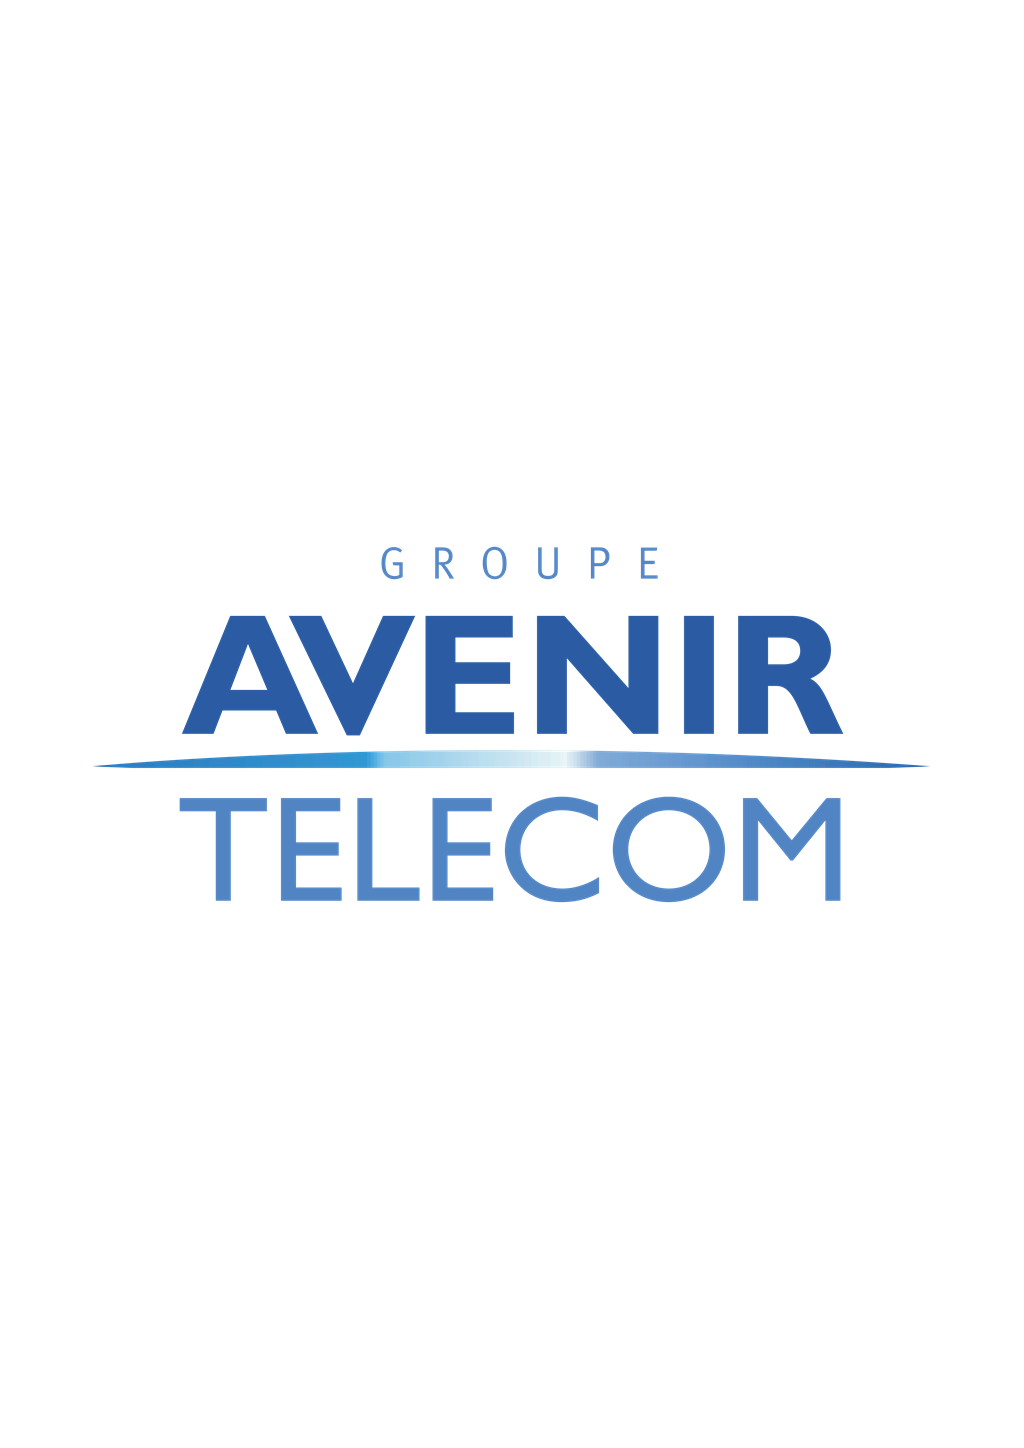 Avenir Telecom logotype, transparent .png, medium, large